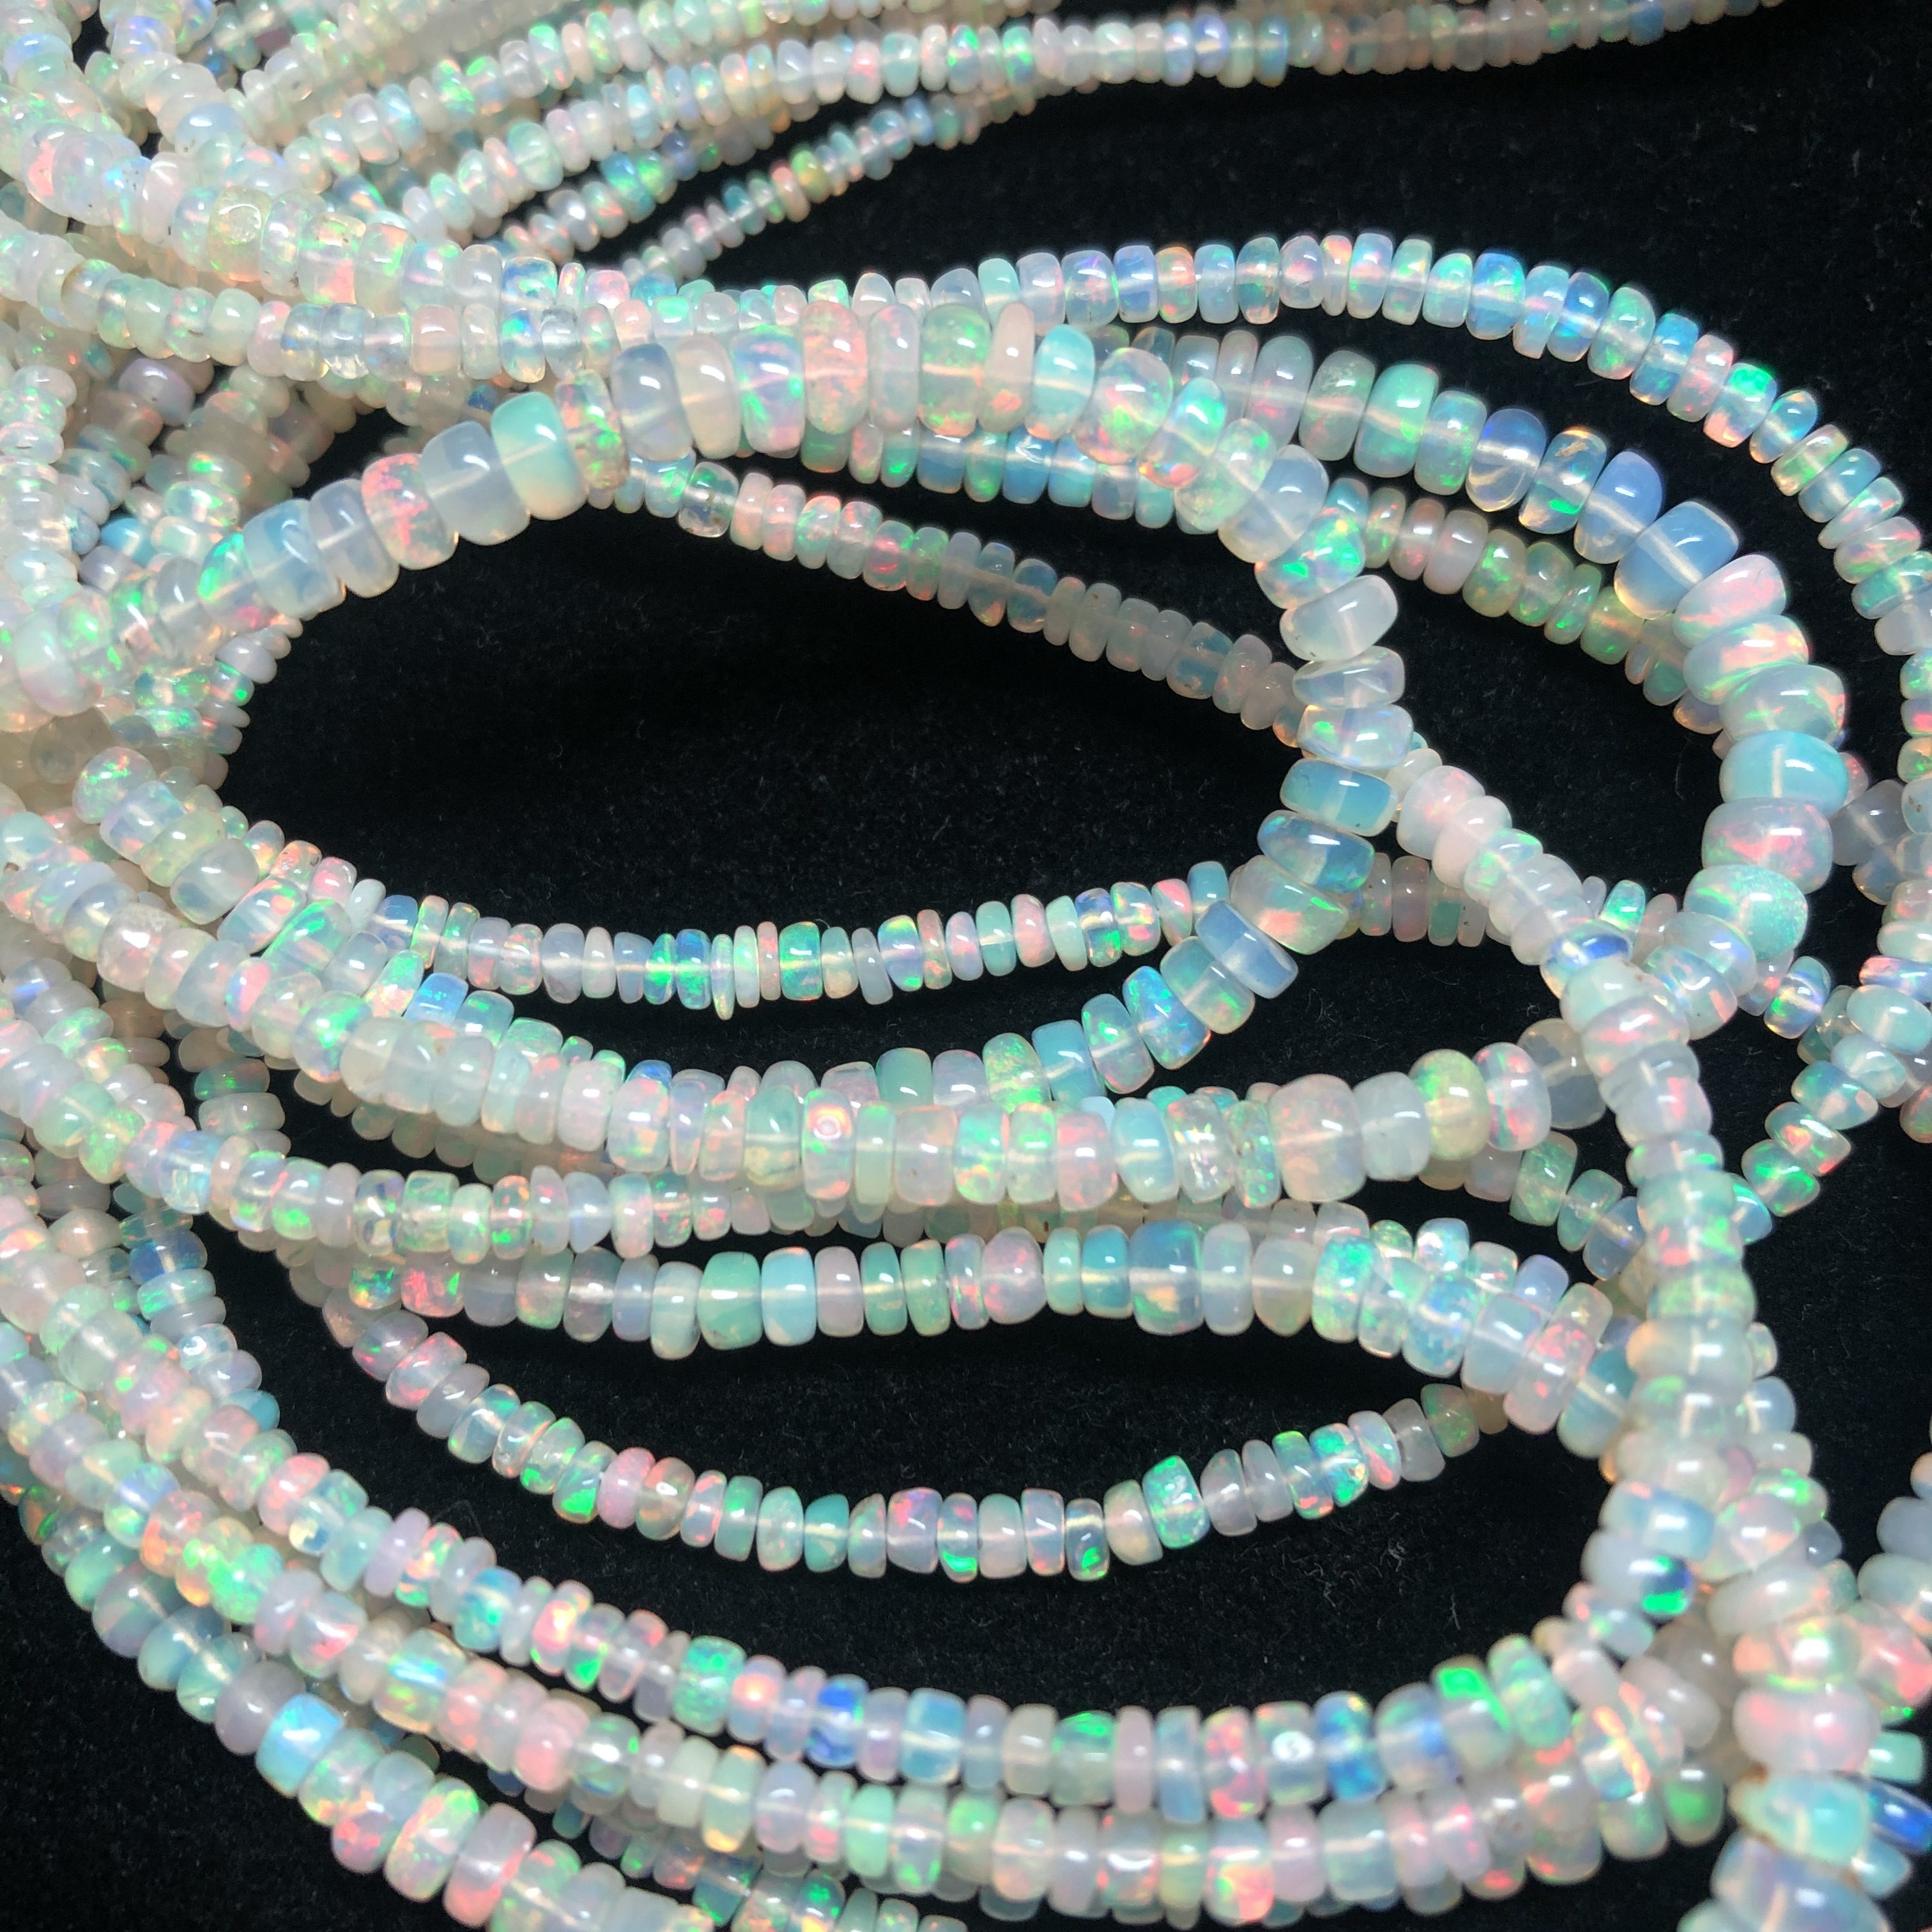 Paraiba Blue Opal Smooth Rondelle Beads Welo Opal Beads Ethiopian Opal Rondelle Beads Blue Opal Plain Beads Fire Opal Beads Flashy Opal